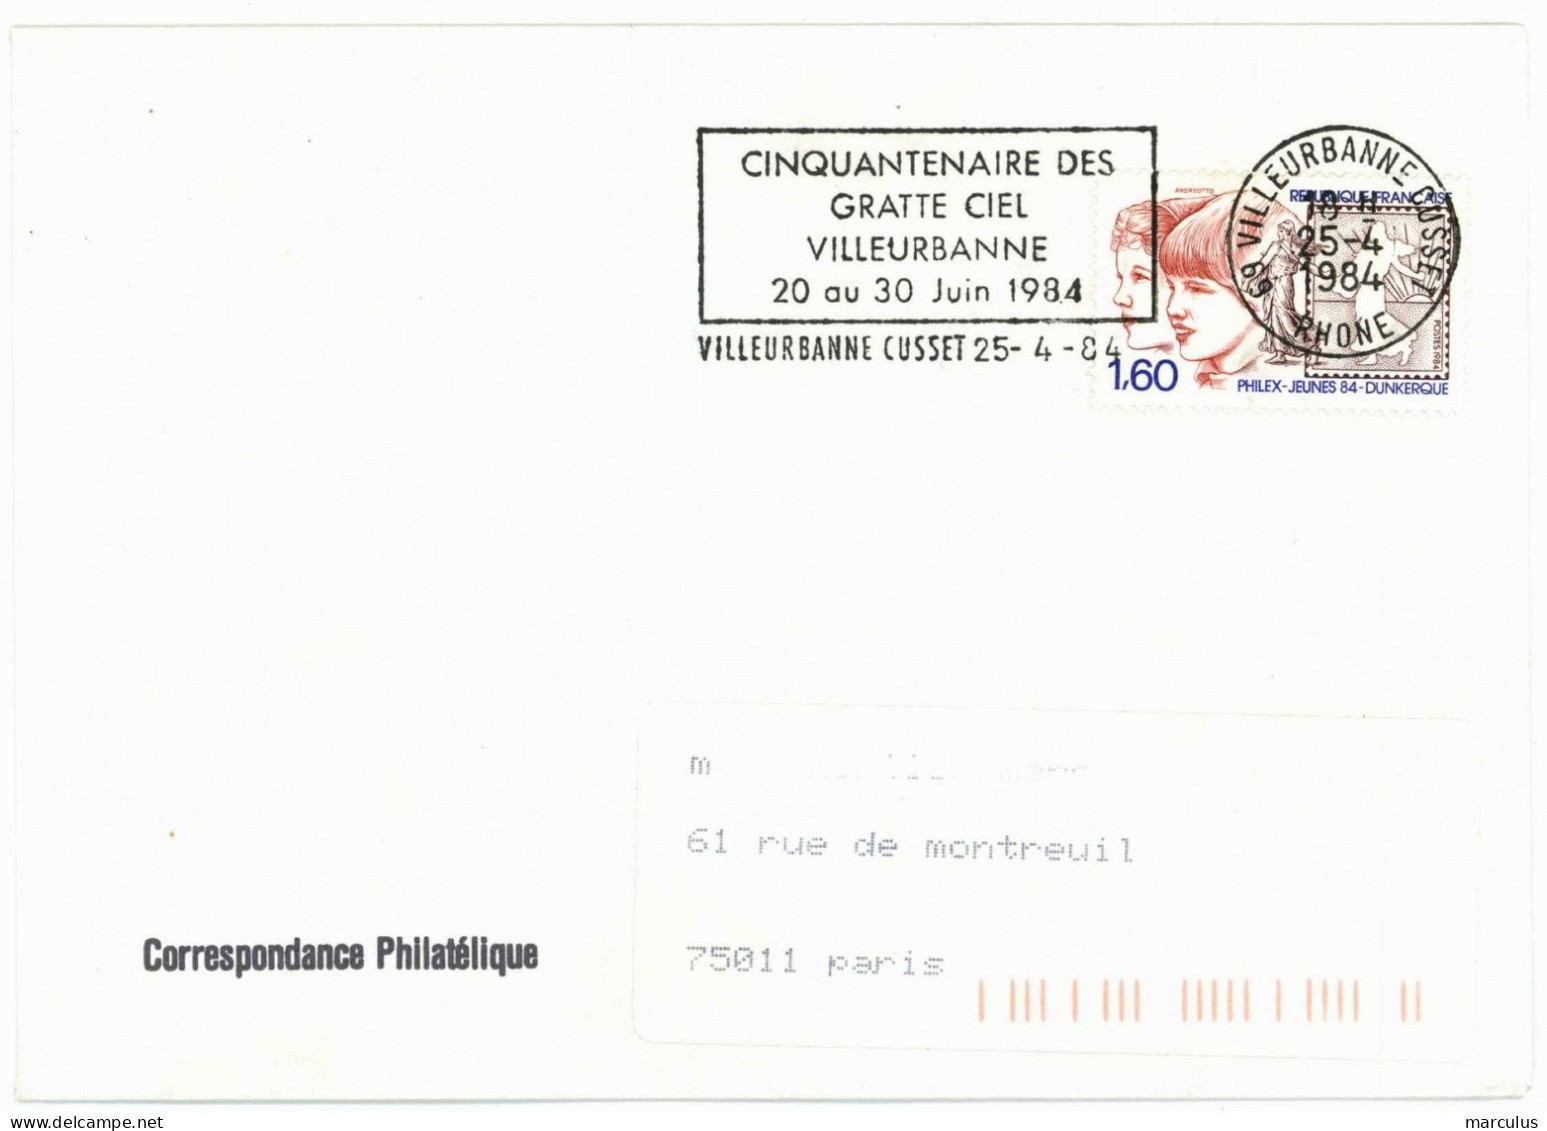 69 VILLEURBANNE CUSSET  RHONE 1984 : CINQUANTENAIRE DES GRATTE CIEL - Mechanical Postmarks (Advertisement)